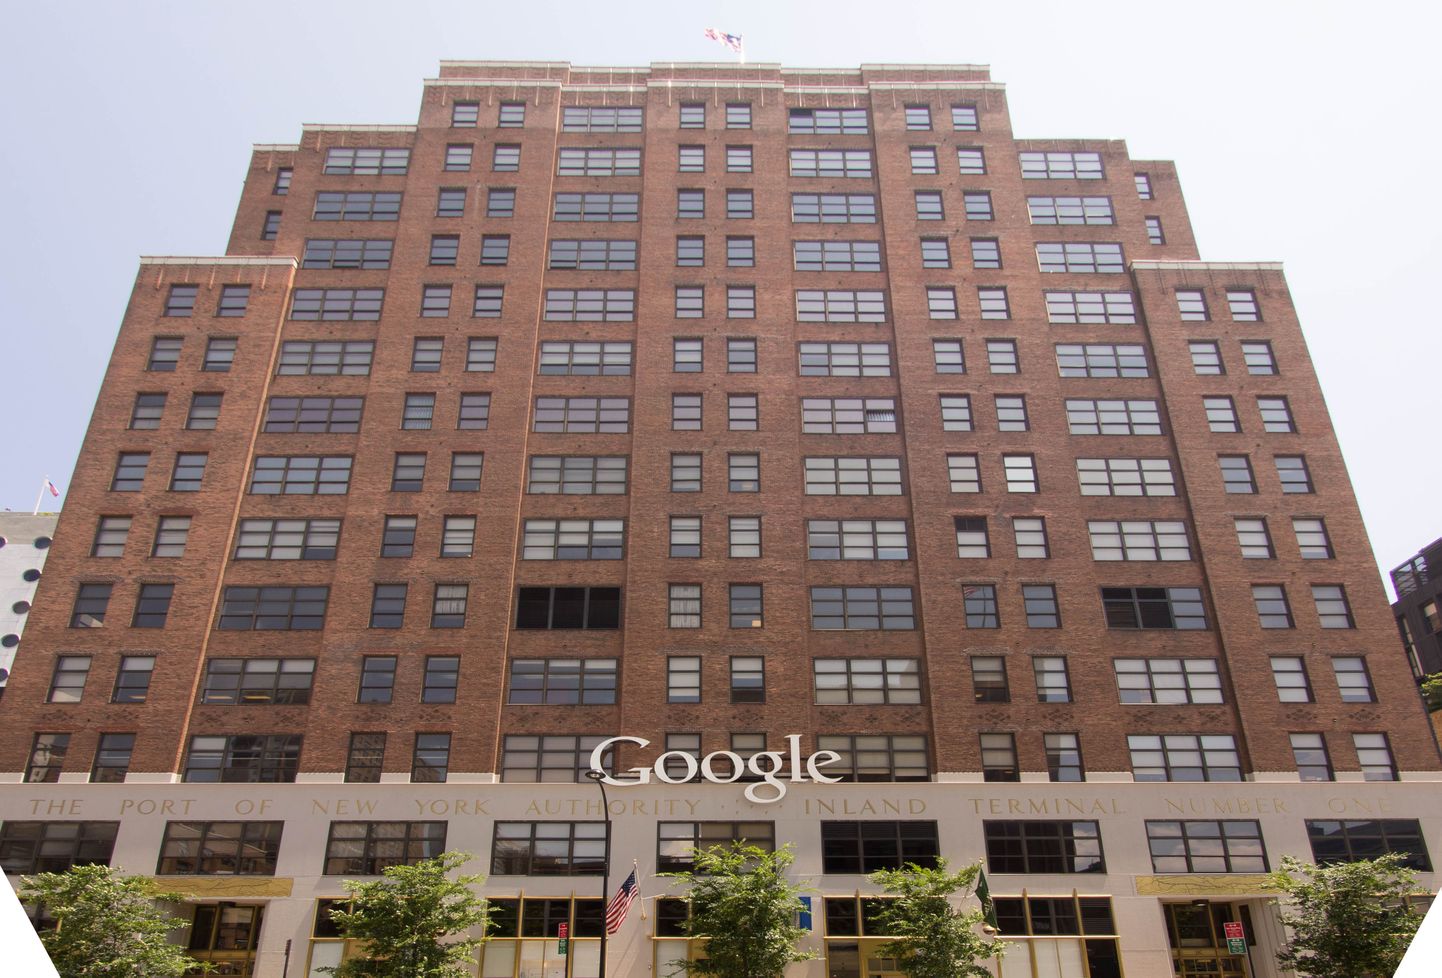 New Yorki kontoris töötab Google suurim reklaamitiim.